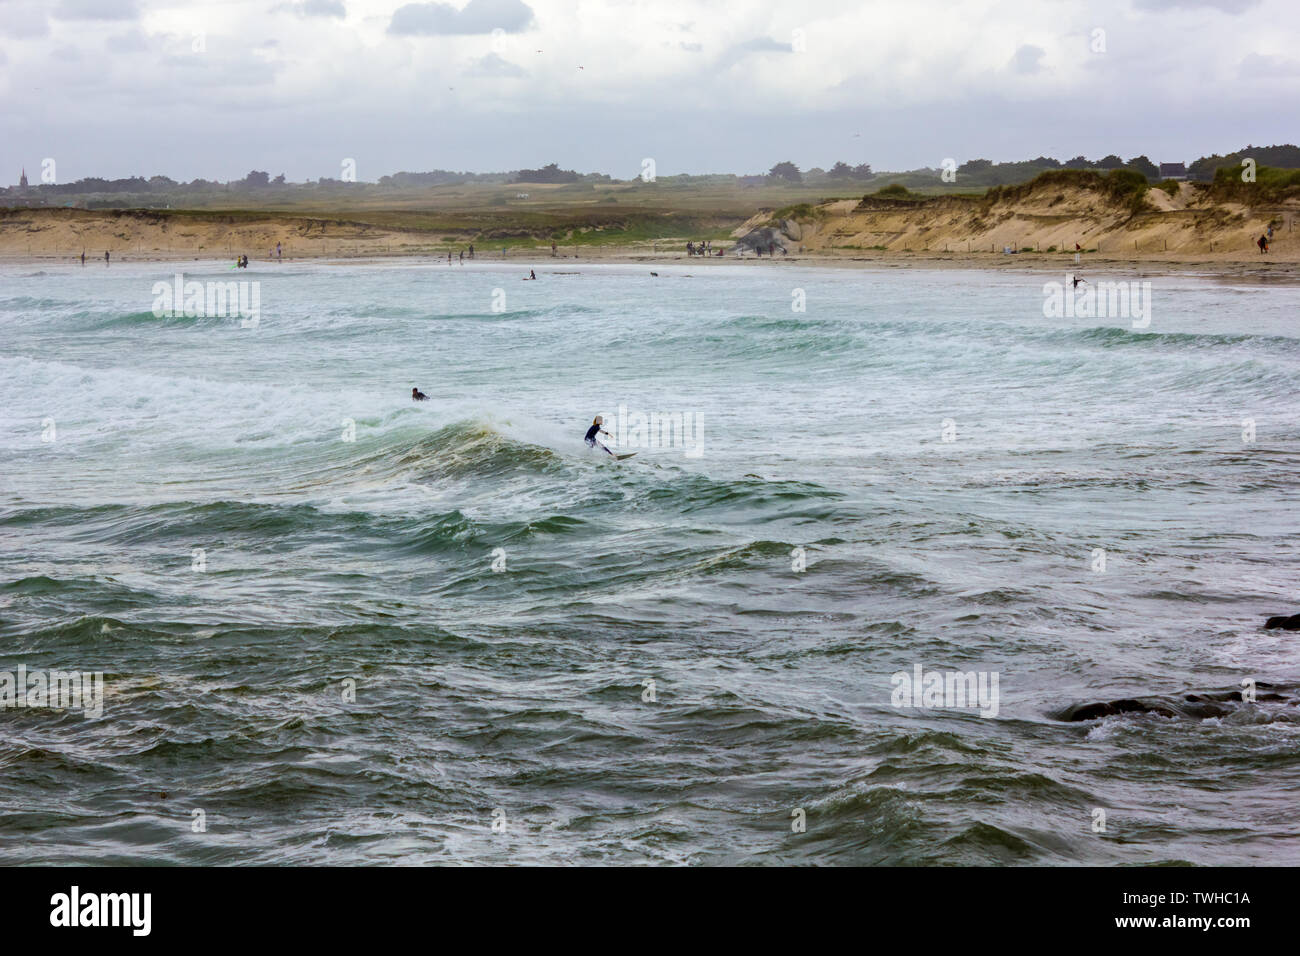 La costa bretona, con olas fuertes y un surfista cabalgando una ola Foto de stock